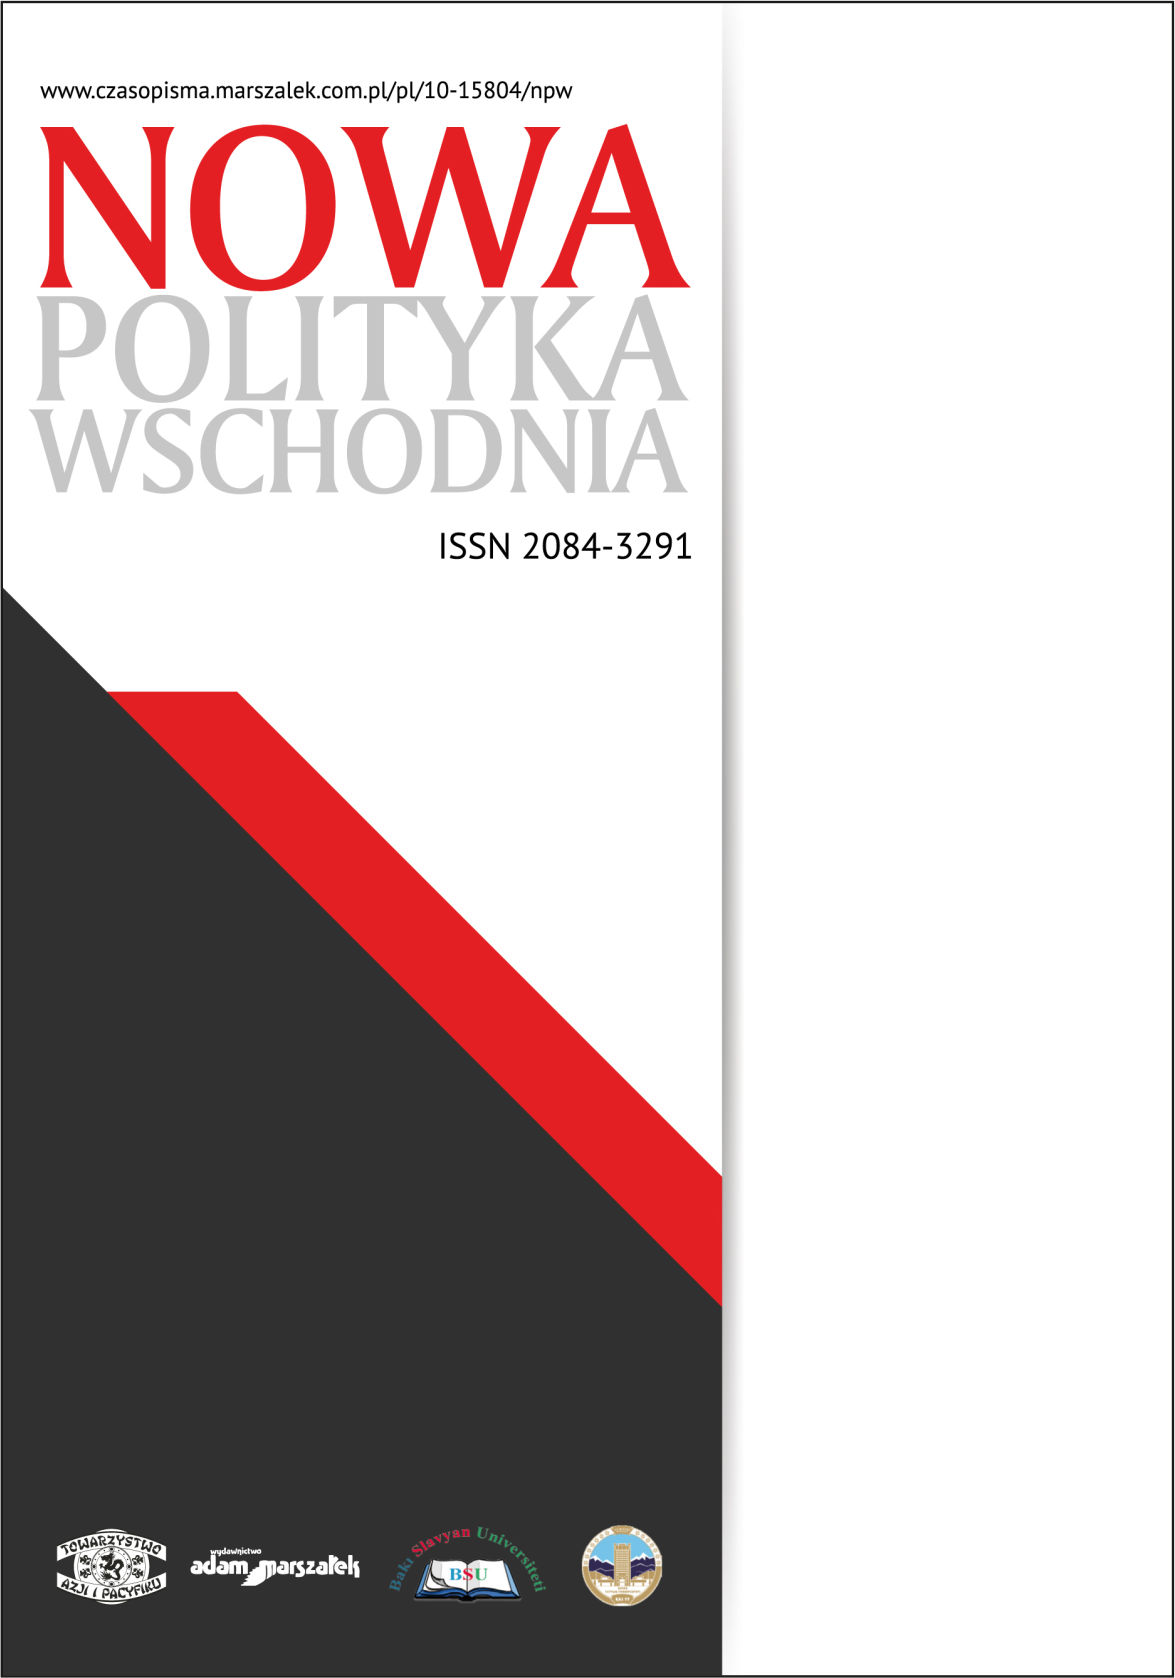 Instytucje ochrony międzynarodowej cudzoziemców w Polsce – rozwiązania polityczne i prawne